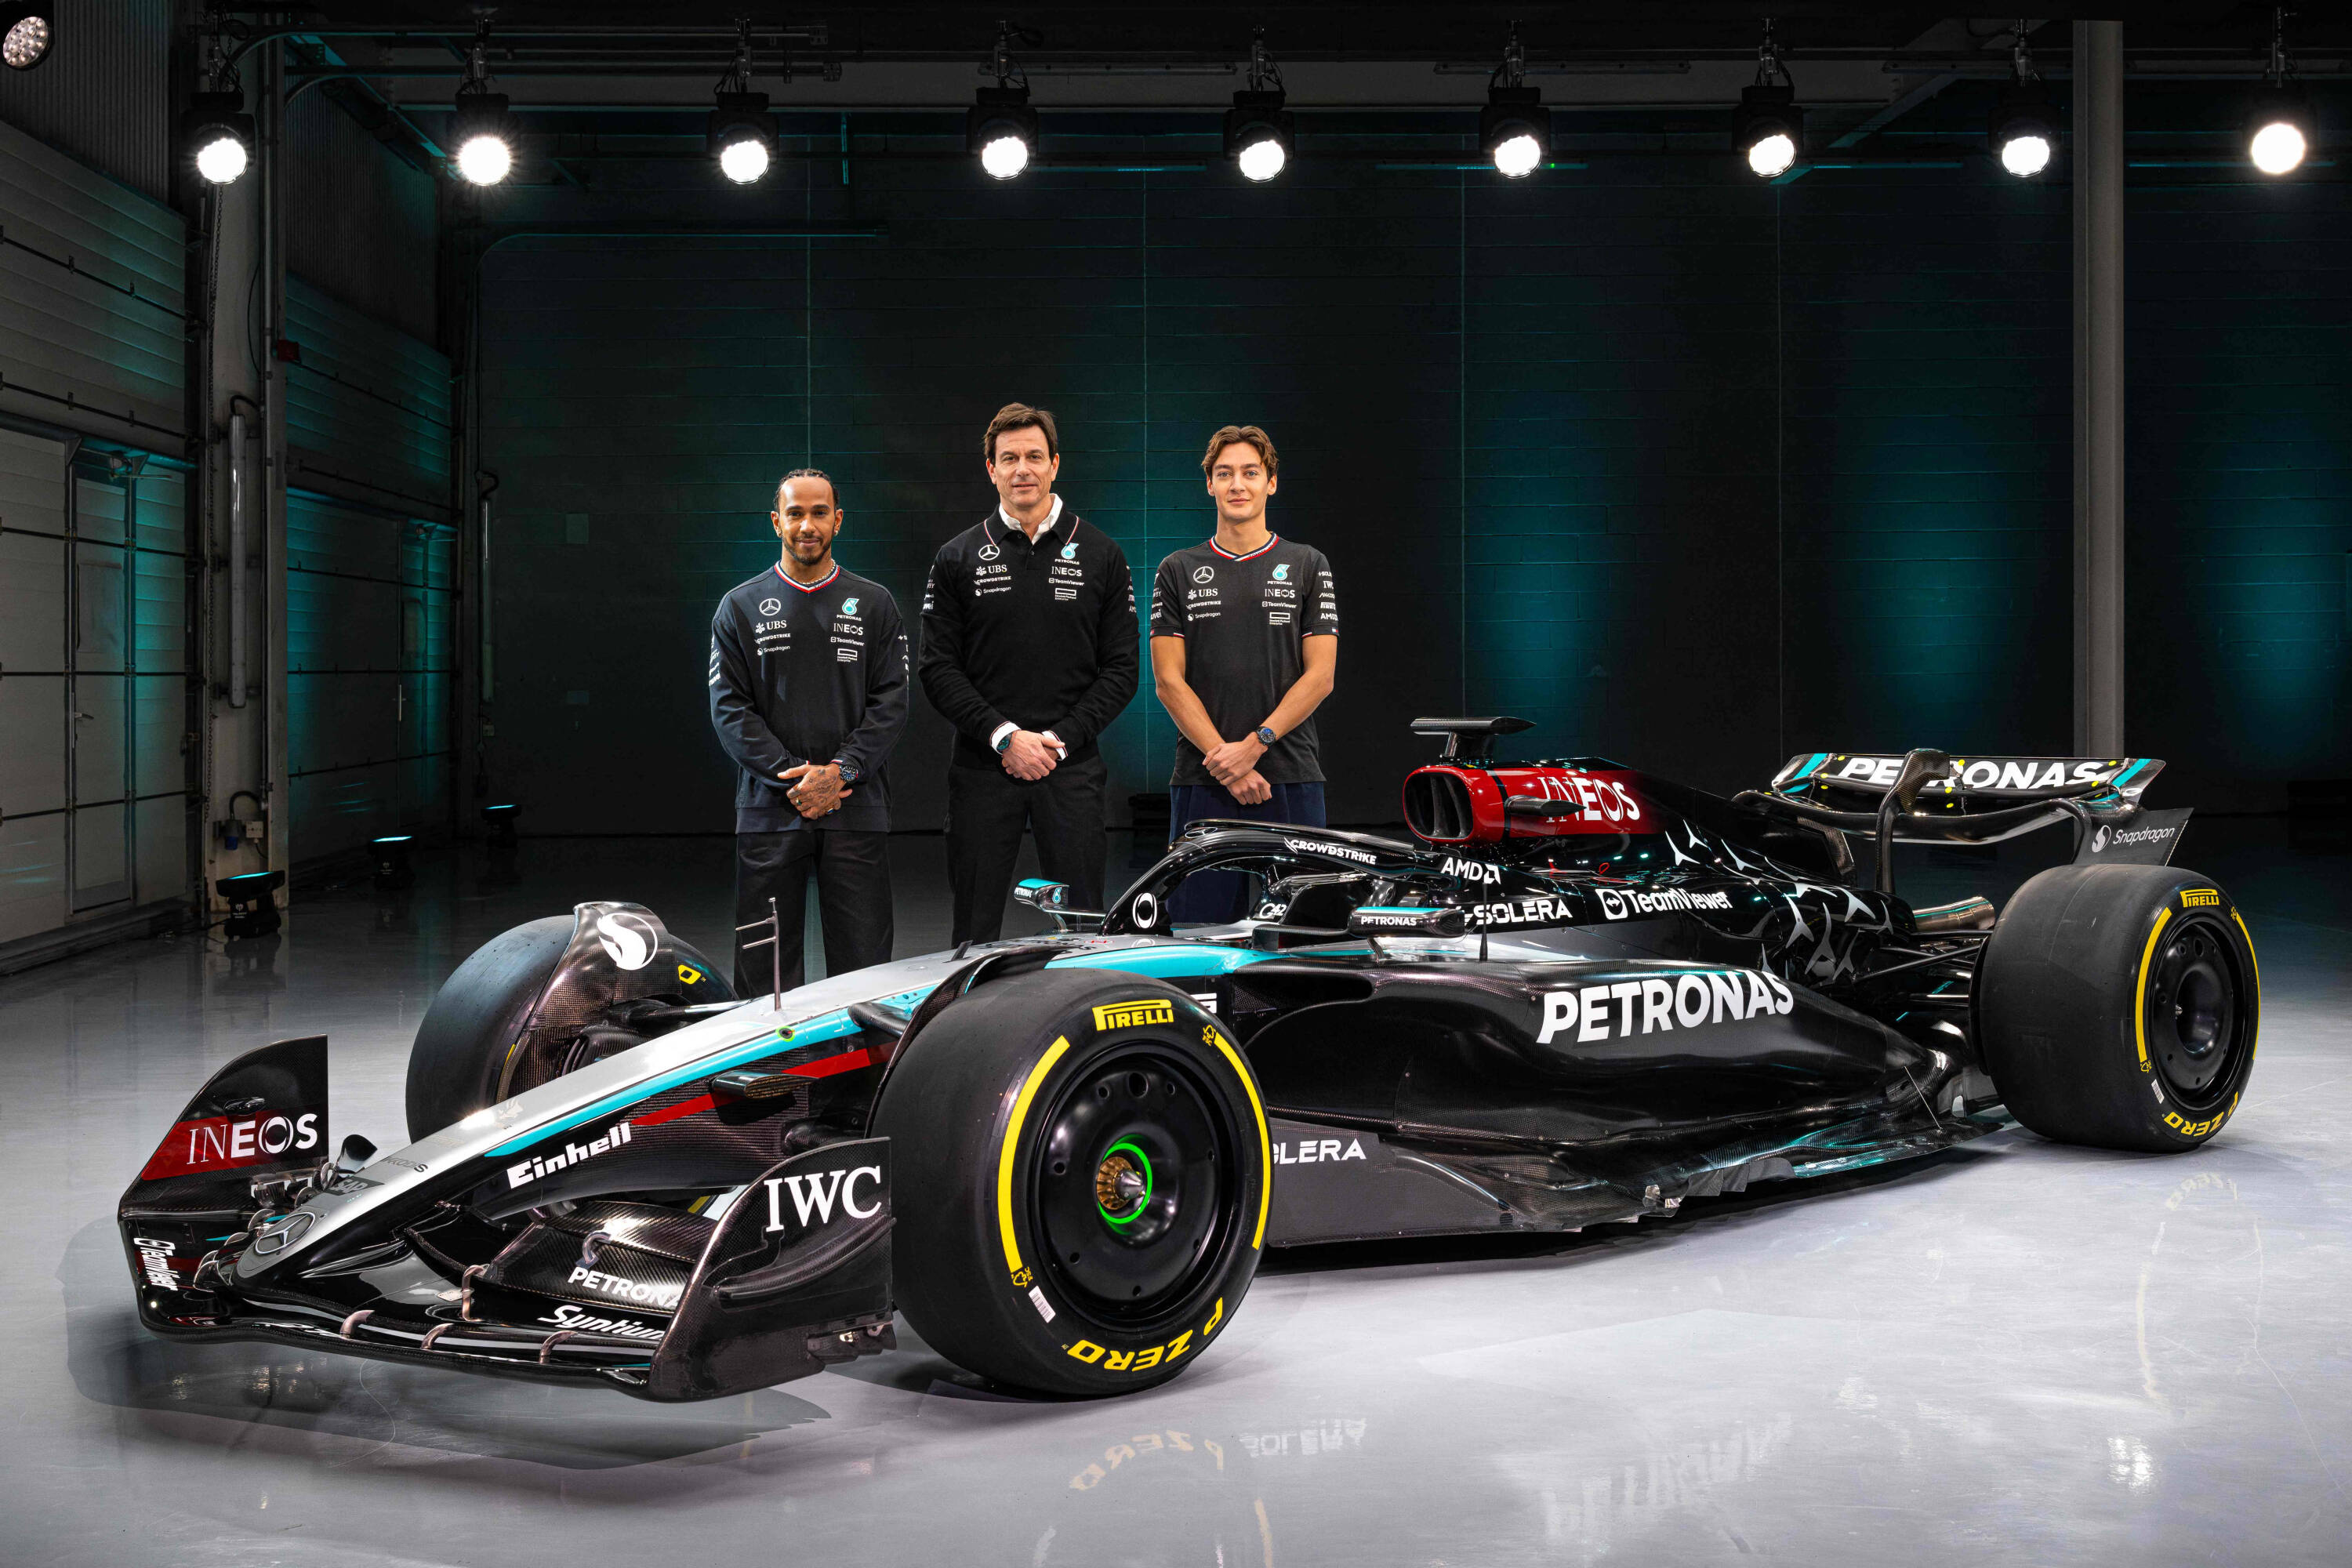 El nuevo Mercedes de Lewis Hamilton